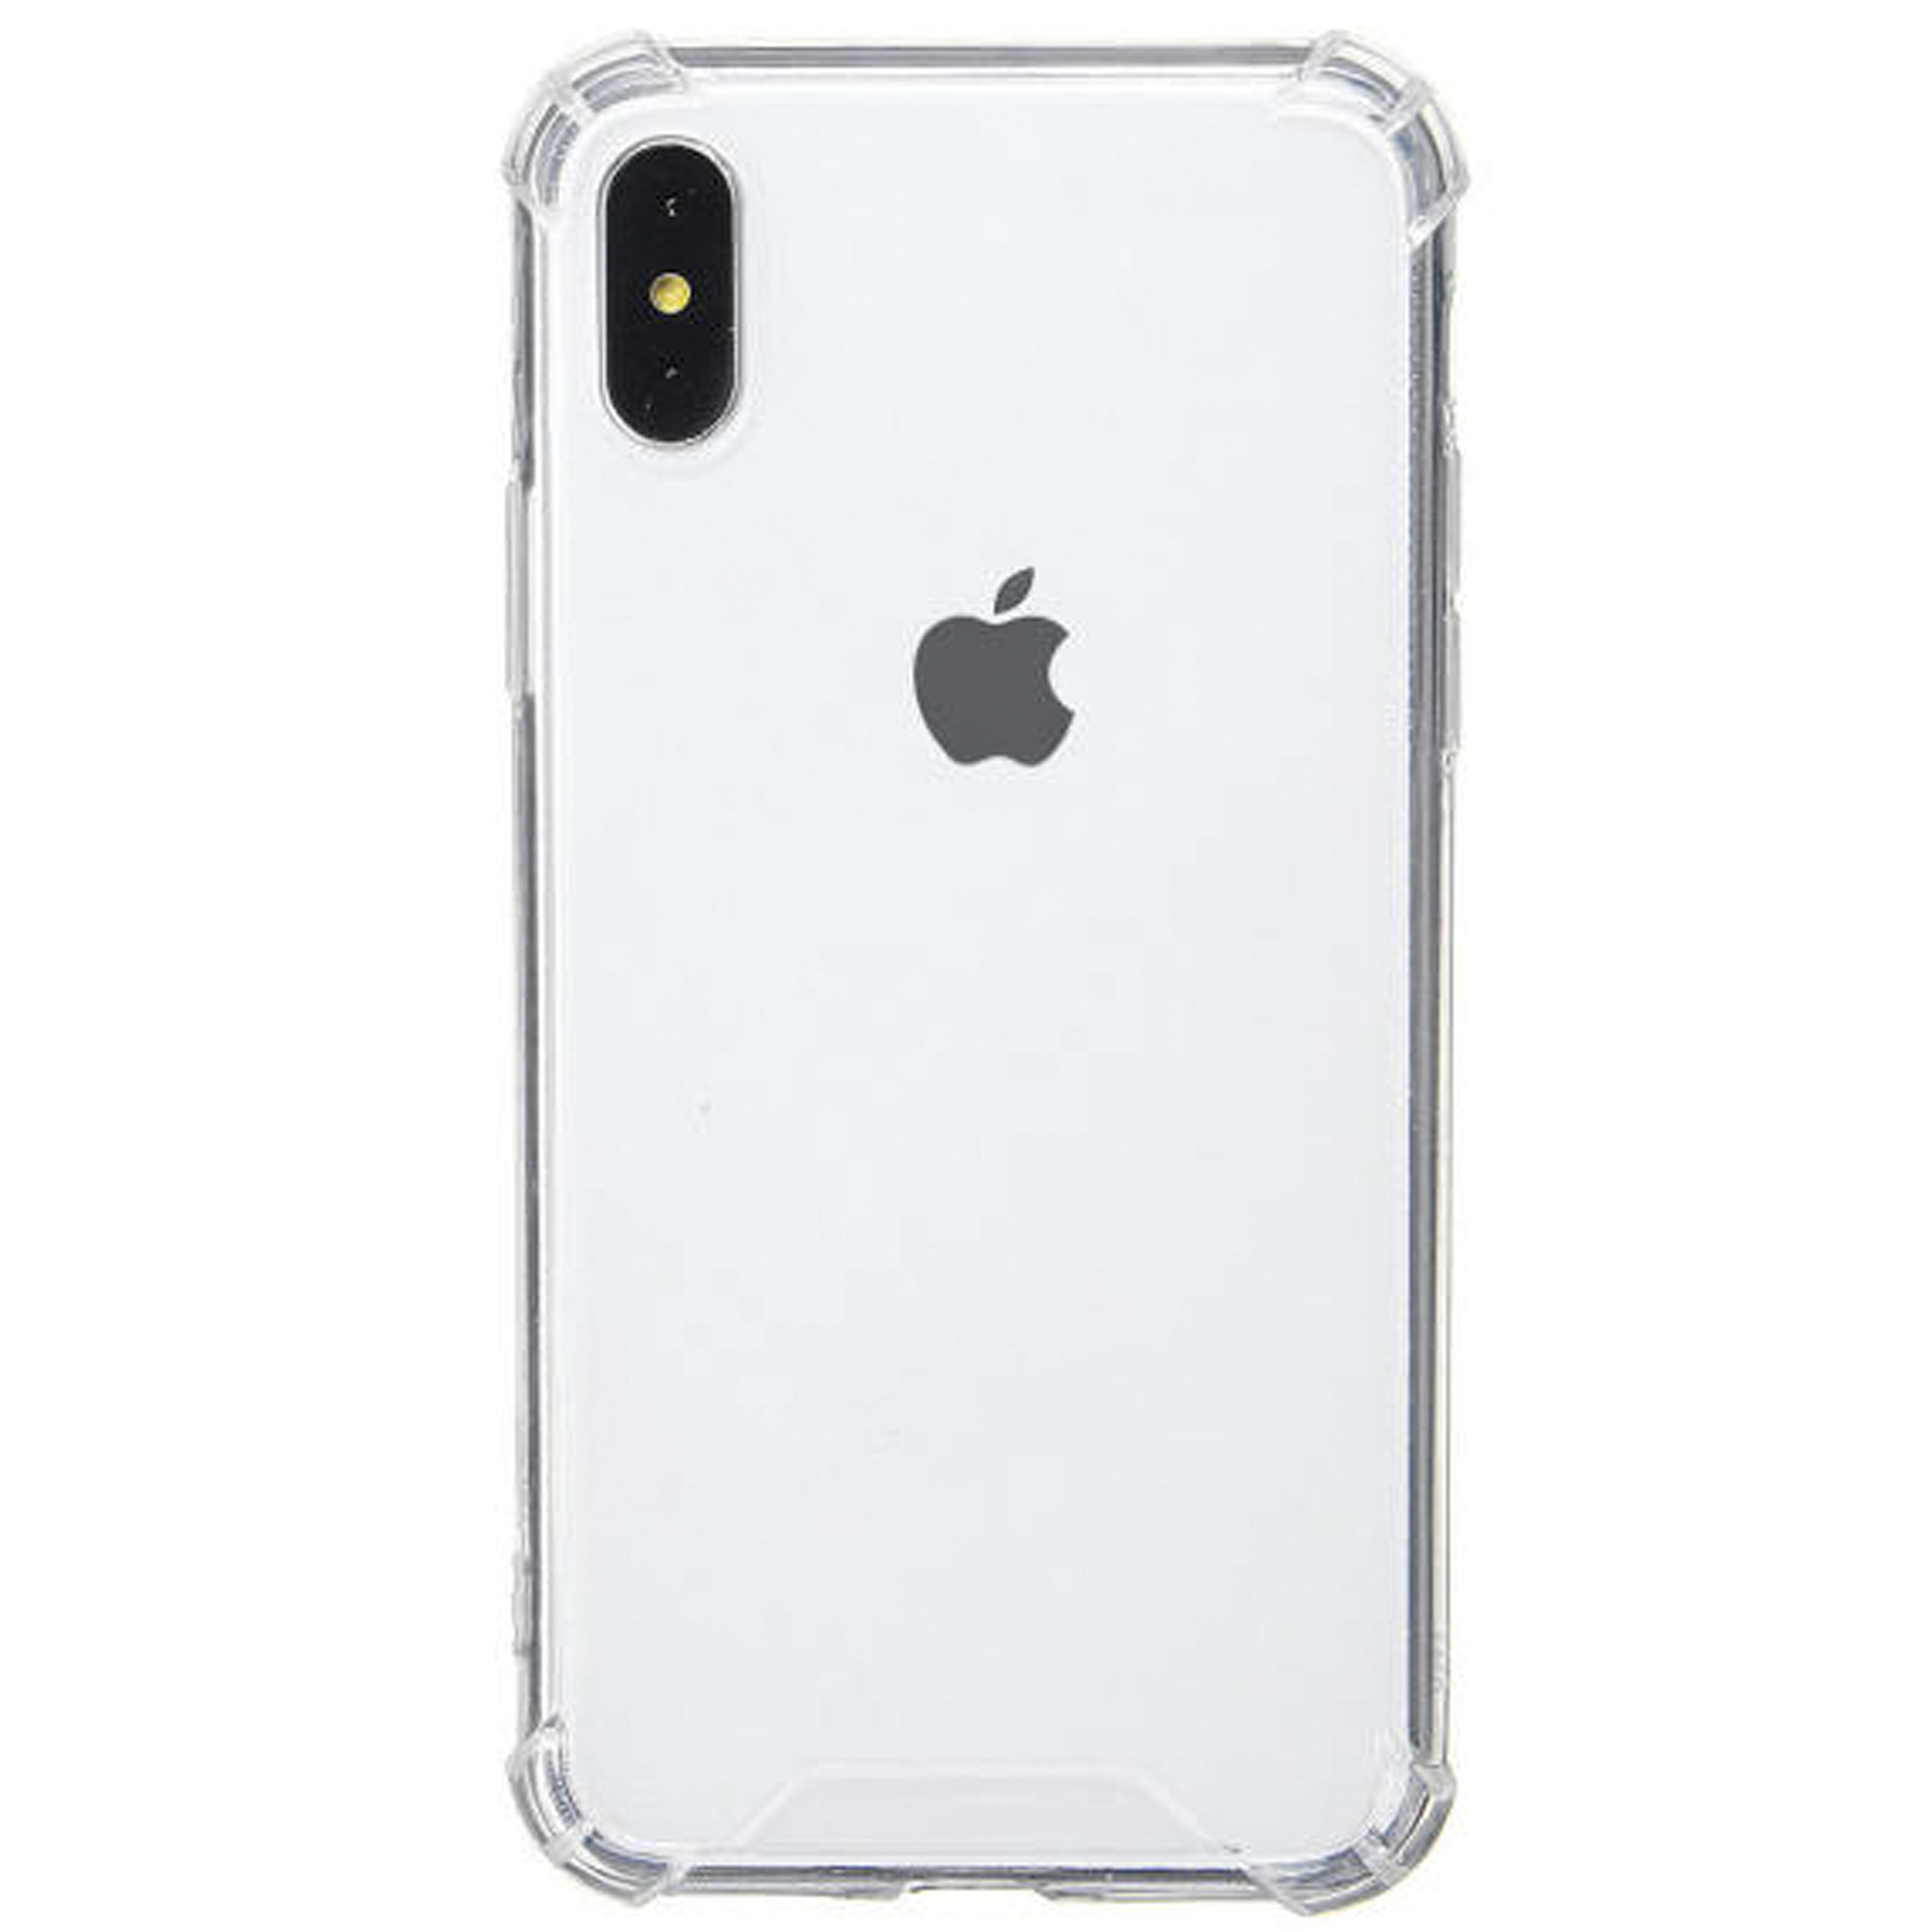 کاور مدل Eouro مناسب برای گوشی موبایل اپل iPhone x / xs